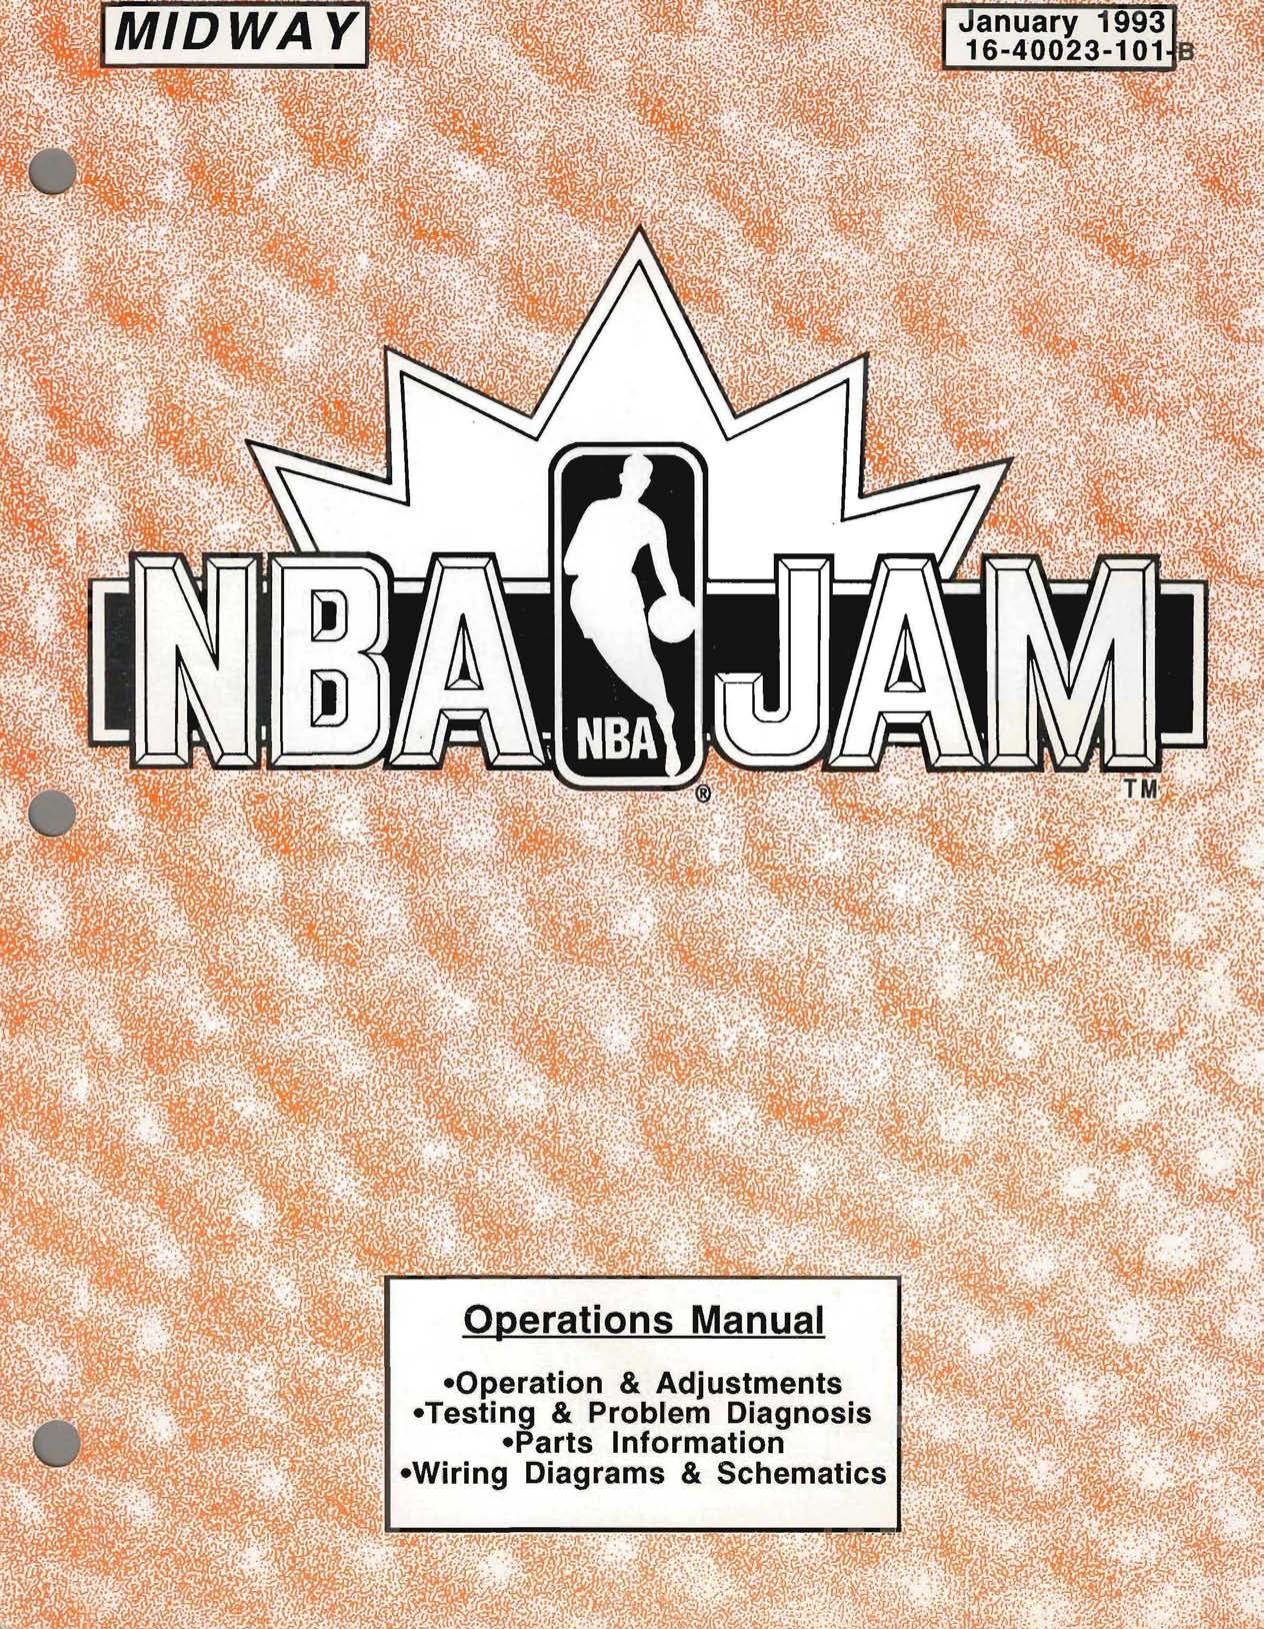 NBA Jam Operations Manual (16-40023-101-b) Jan 1993